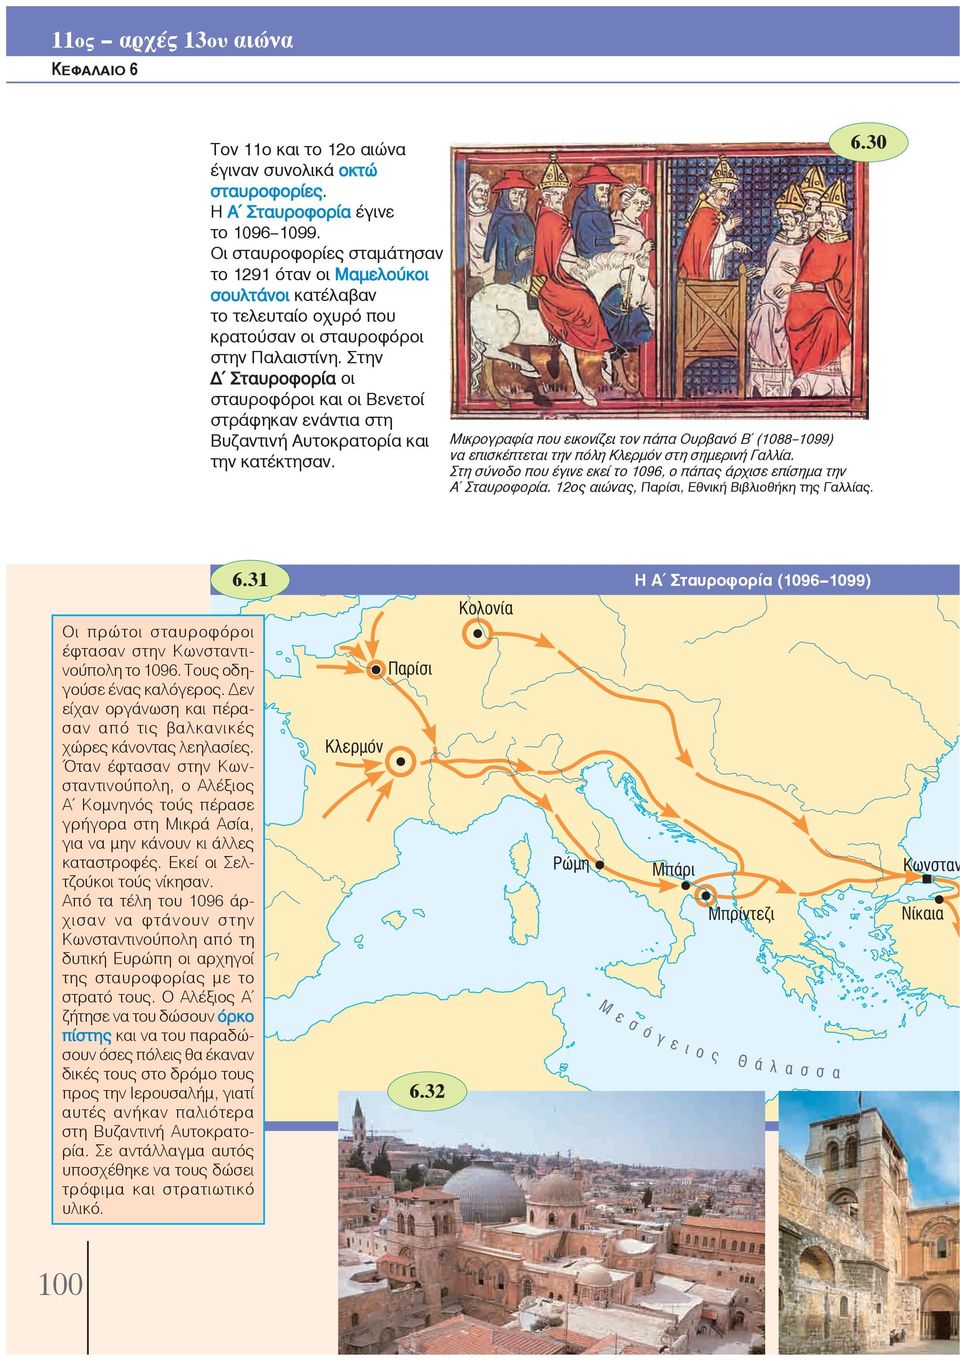 Στην Δ Σταυροφορία οι σταυροφόροι και οι Βενετοί στράφηκαν ενάντια στη Βυζαντινή Αυτοκρατορία και Μικρογραφία που εικονίζει τον πάπα Ουρβανό Β (1088--1099) να επισκέπτεται την πόλη Κλερμόν στη